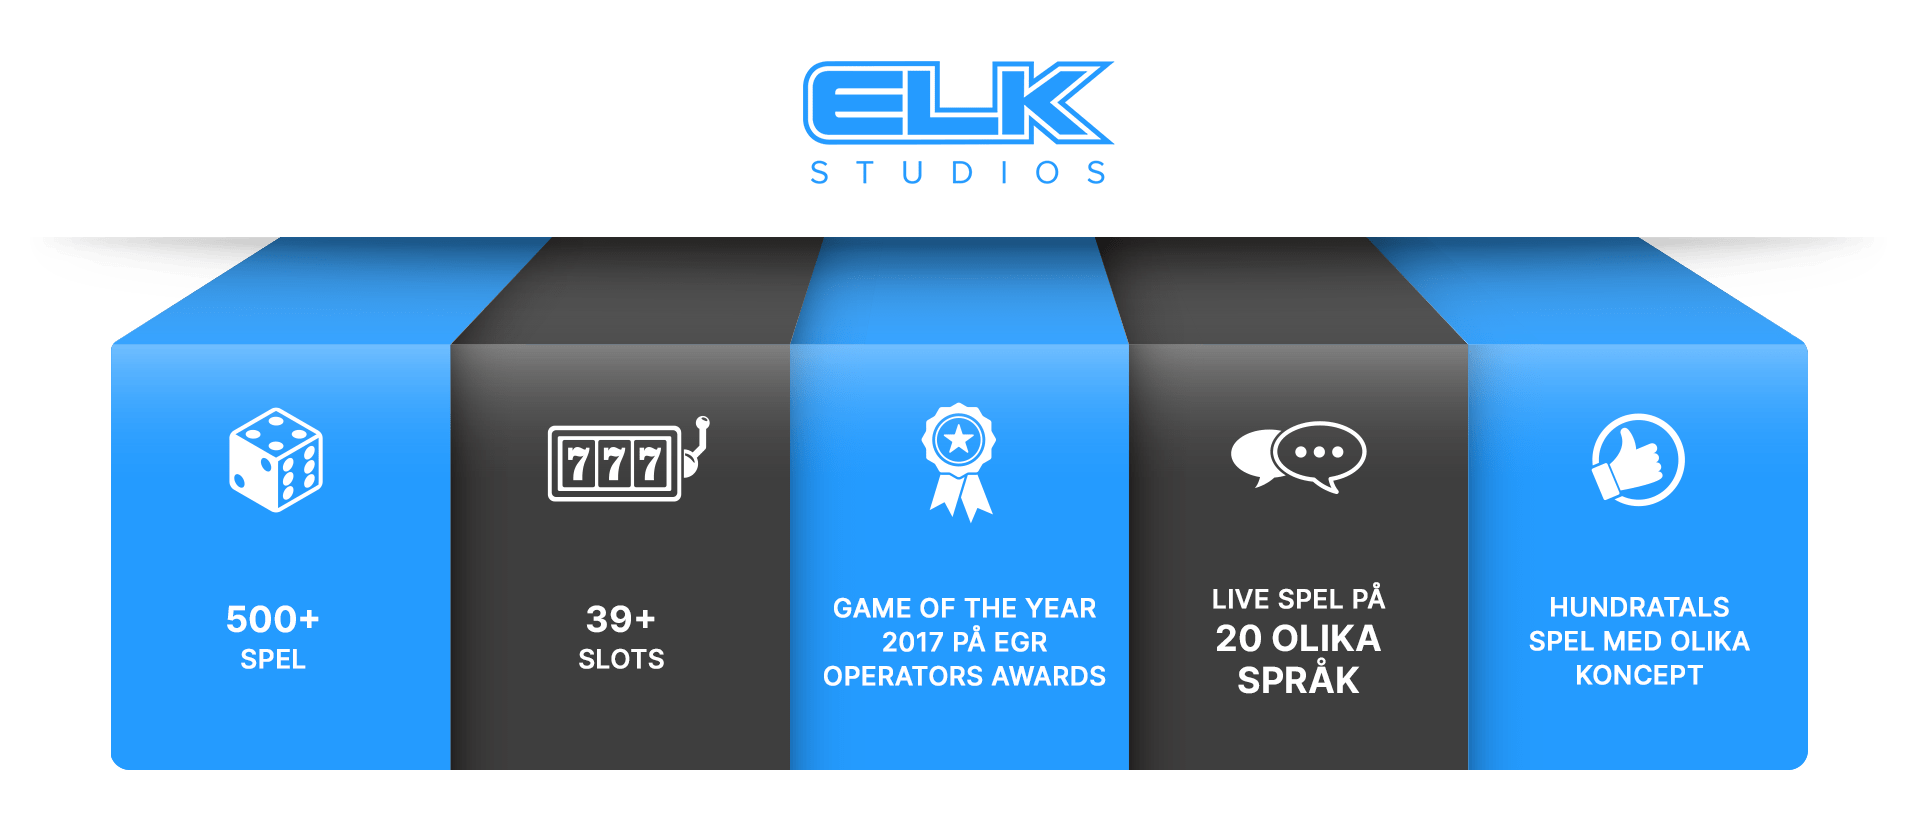 Elk studios